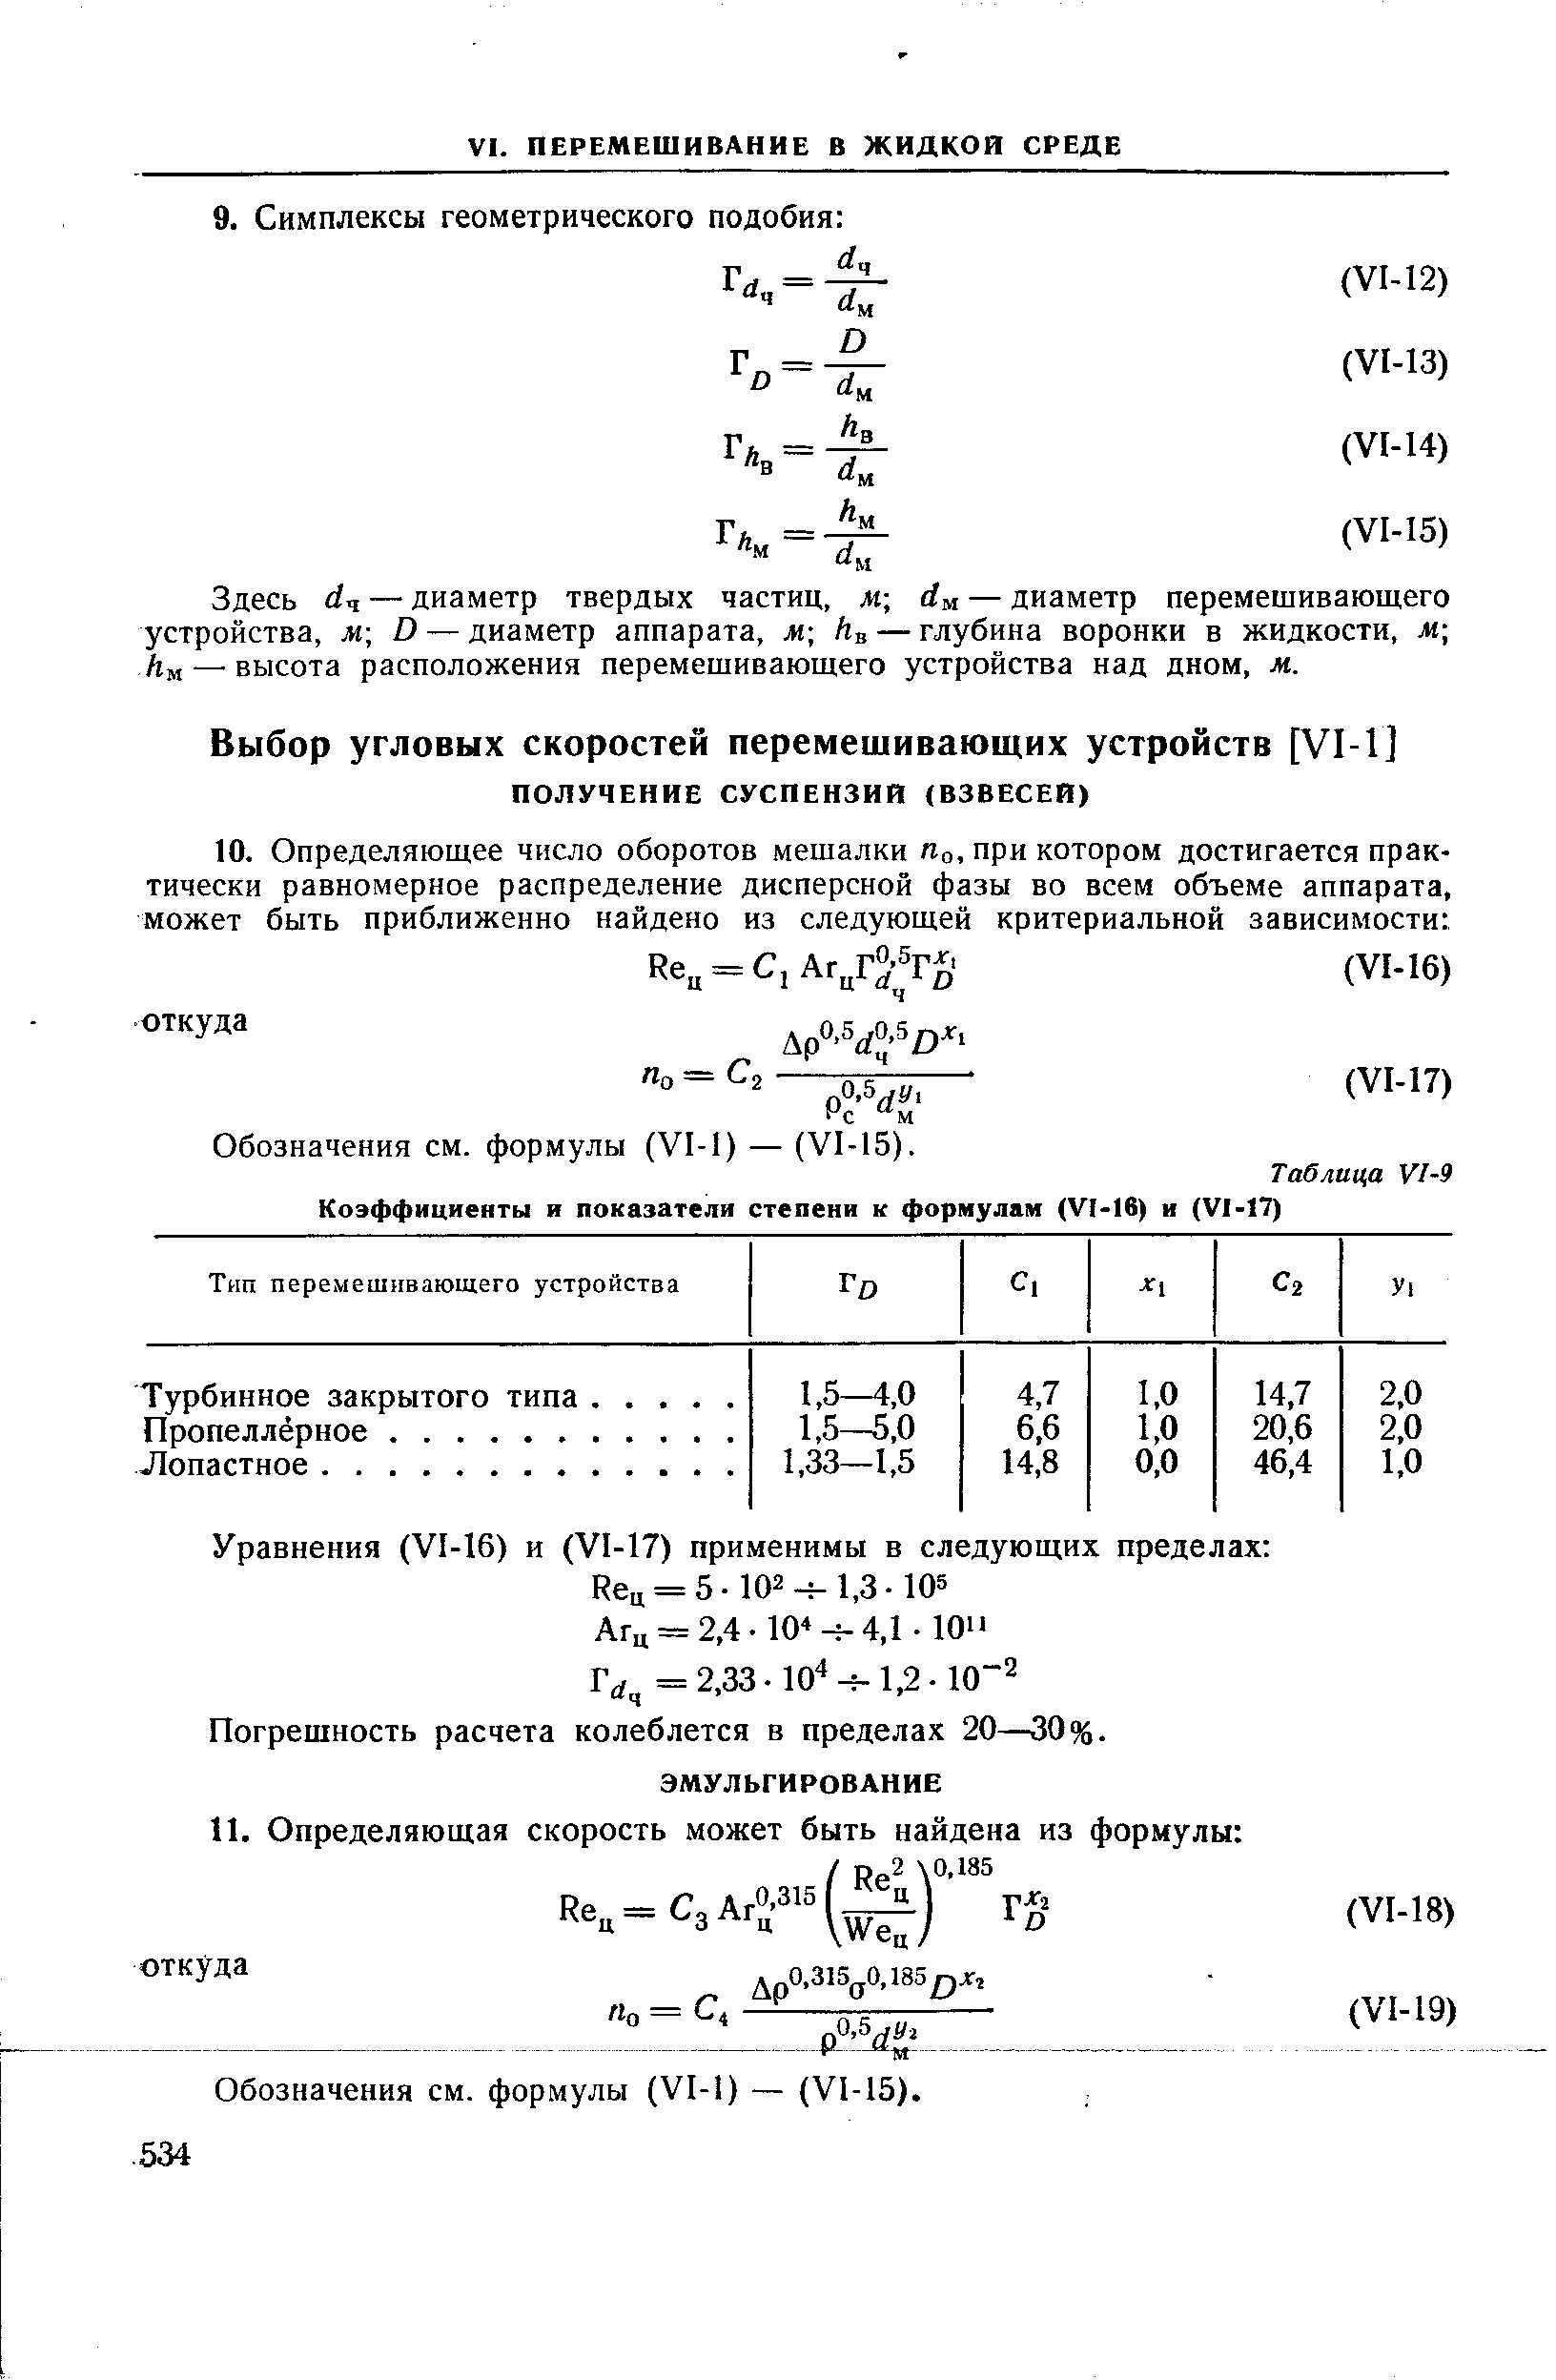 Обозначения см. формулы (V1-1) — (VI-15).